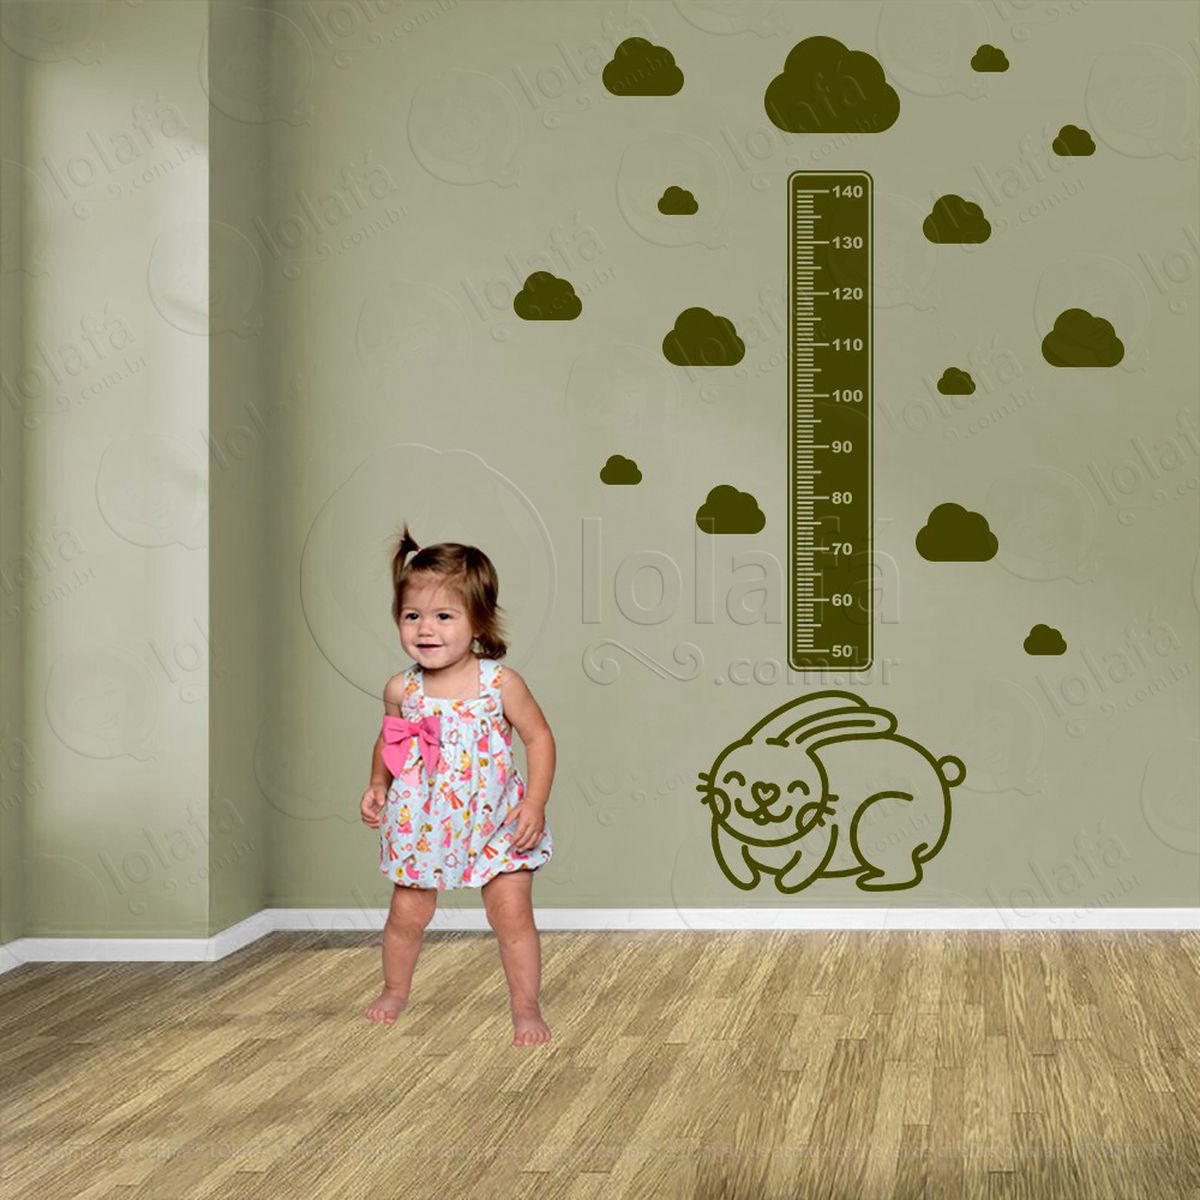 coelho e nuvens adesivo régua de crescimento infantil, medidor de altura para quarto, porta e parede - mod:1030